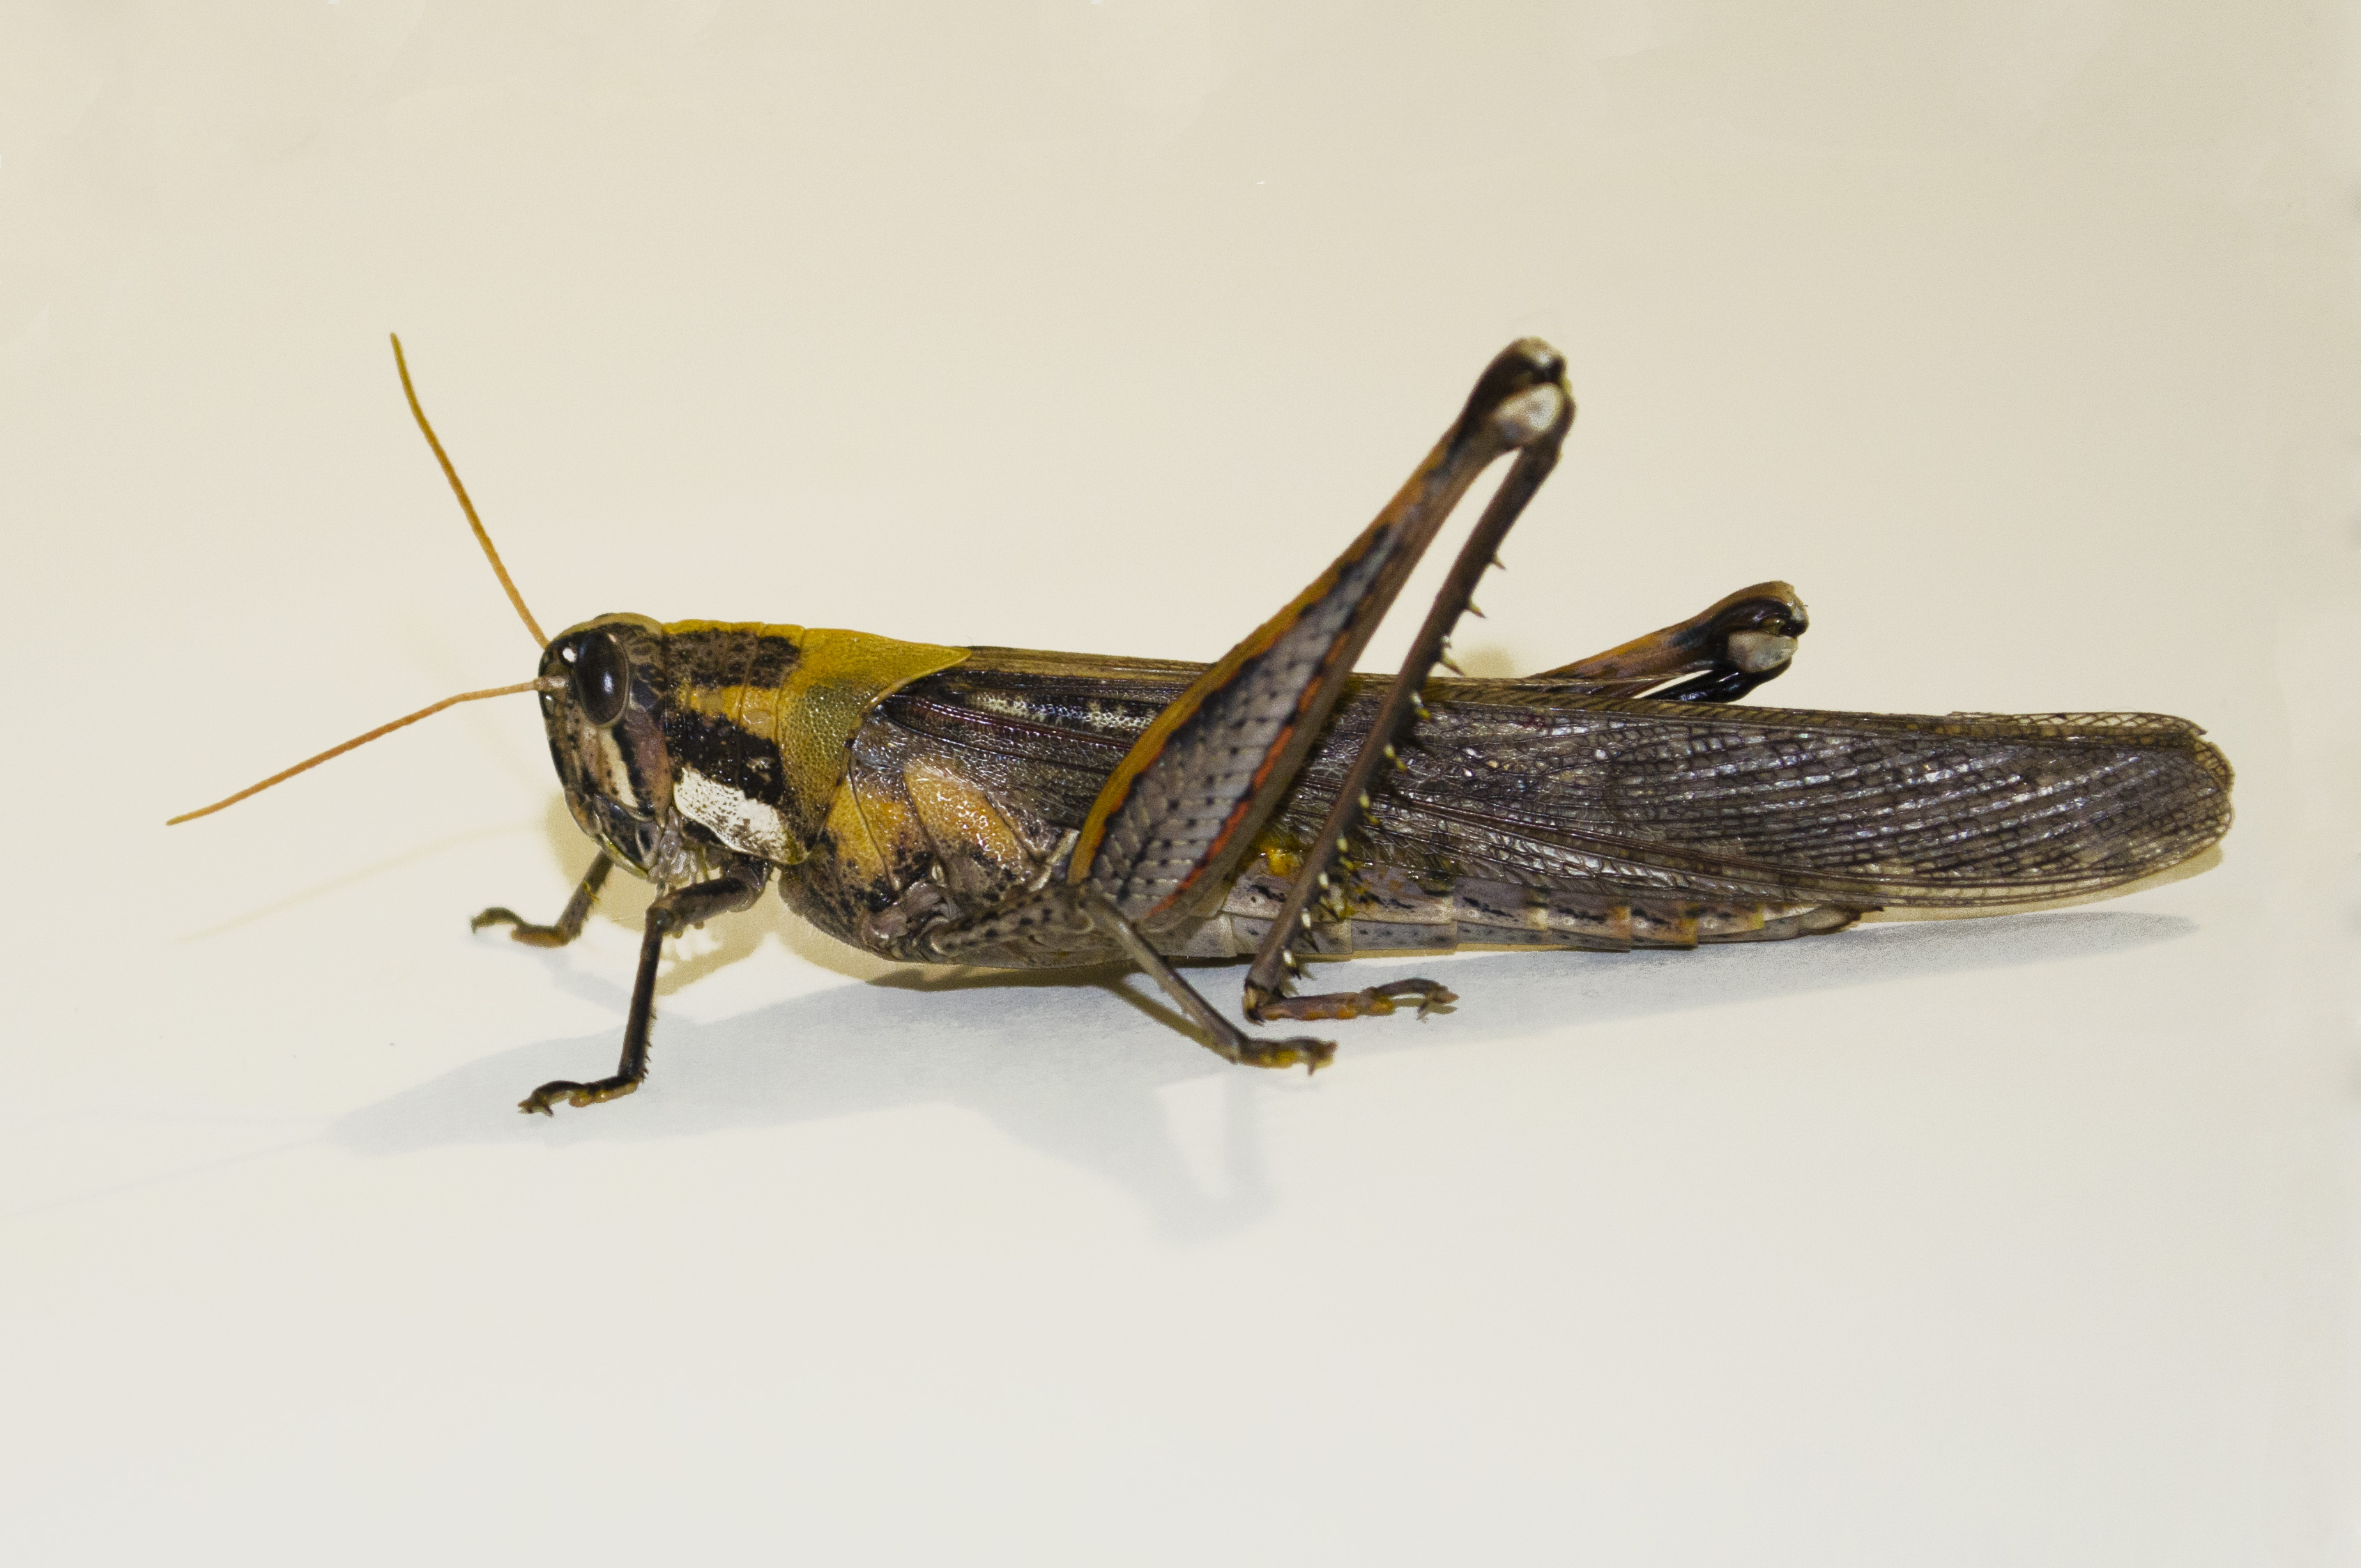 Grasshopper photo